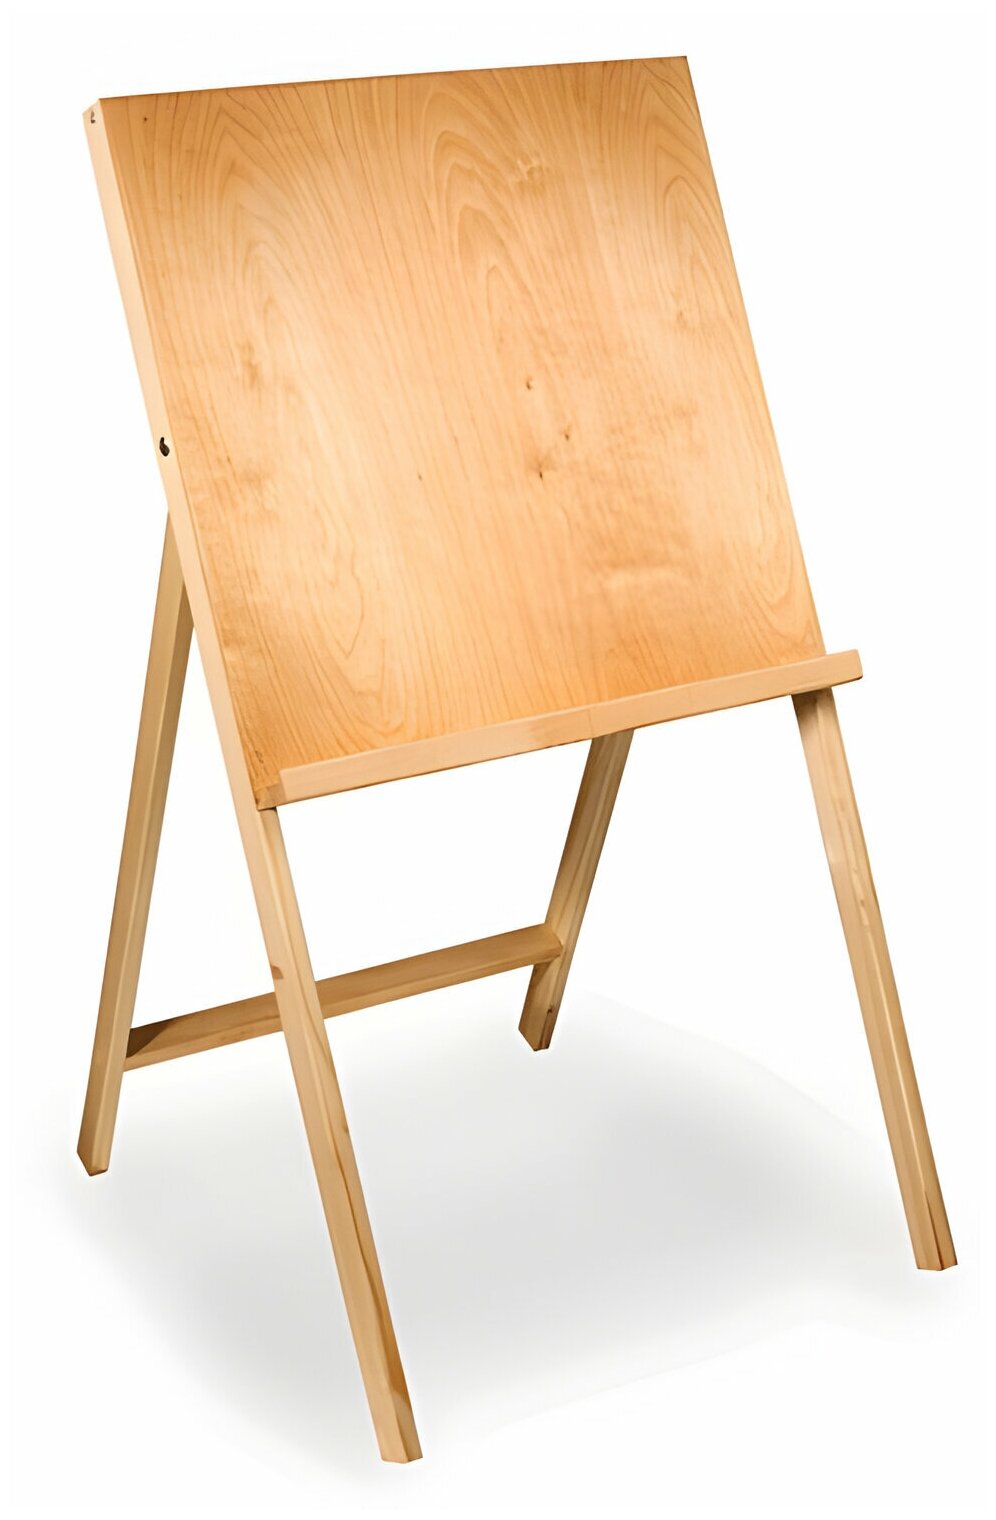 Мольберт напольный Хлопушка, размер планшета 60x60 см, в собранном виде 60x120x8 см